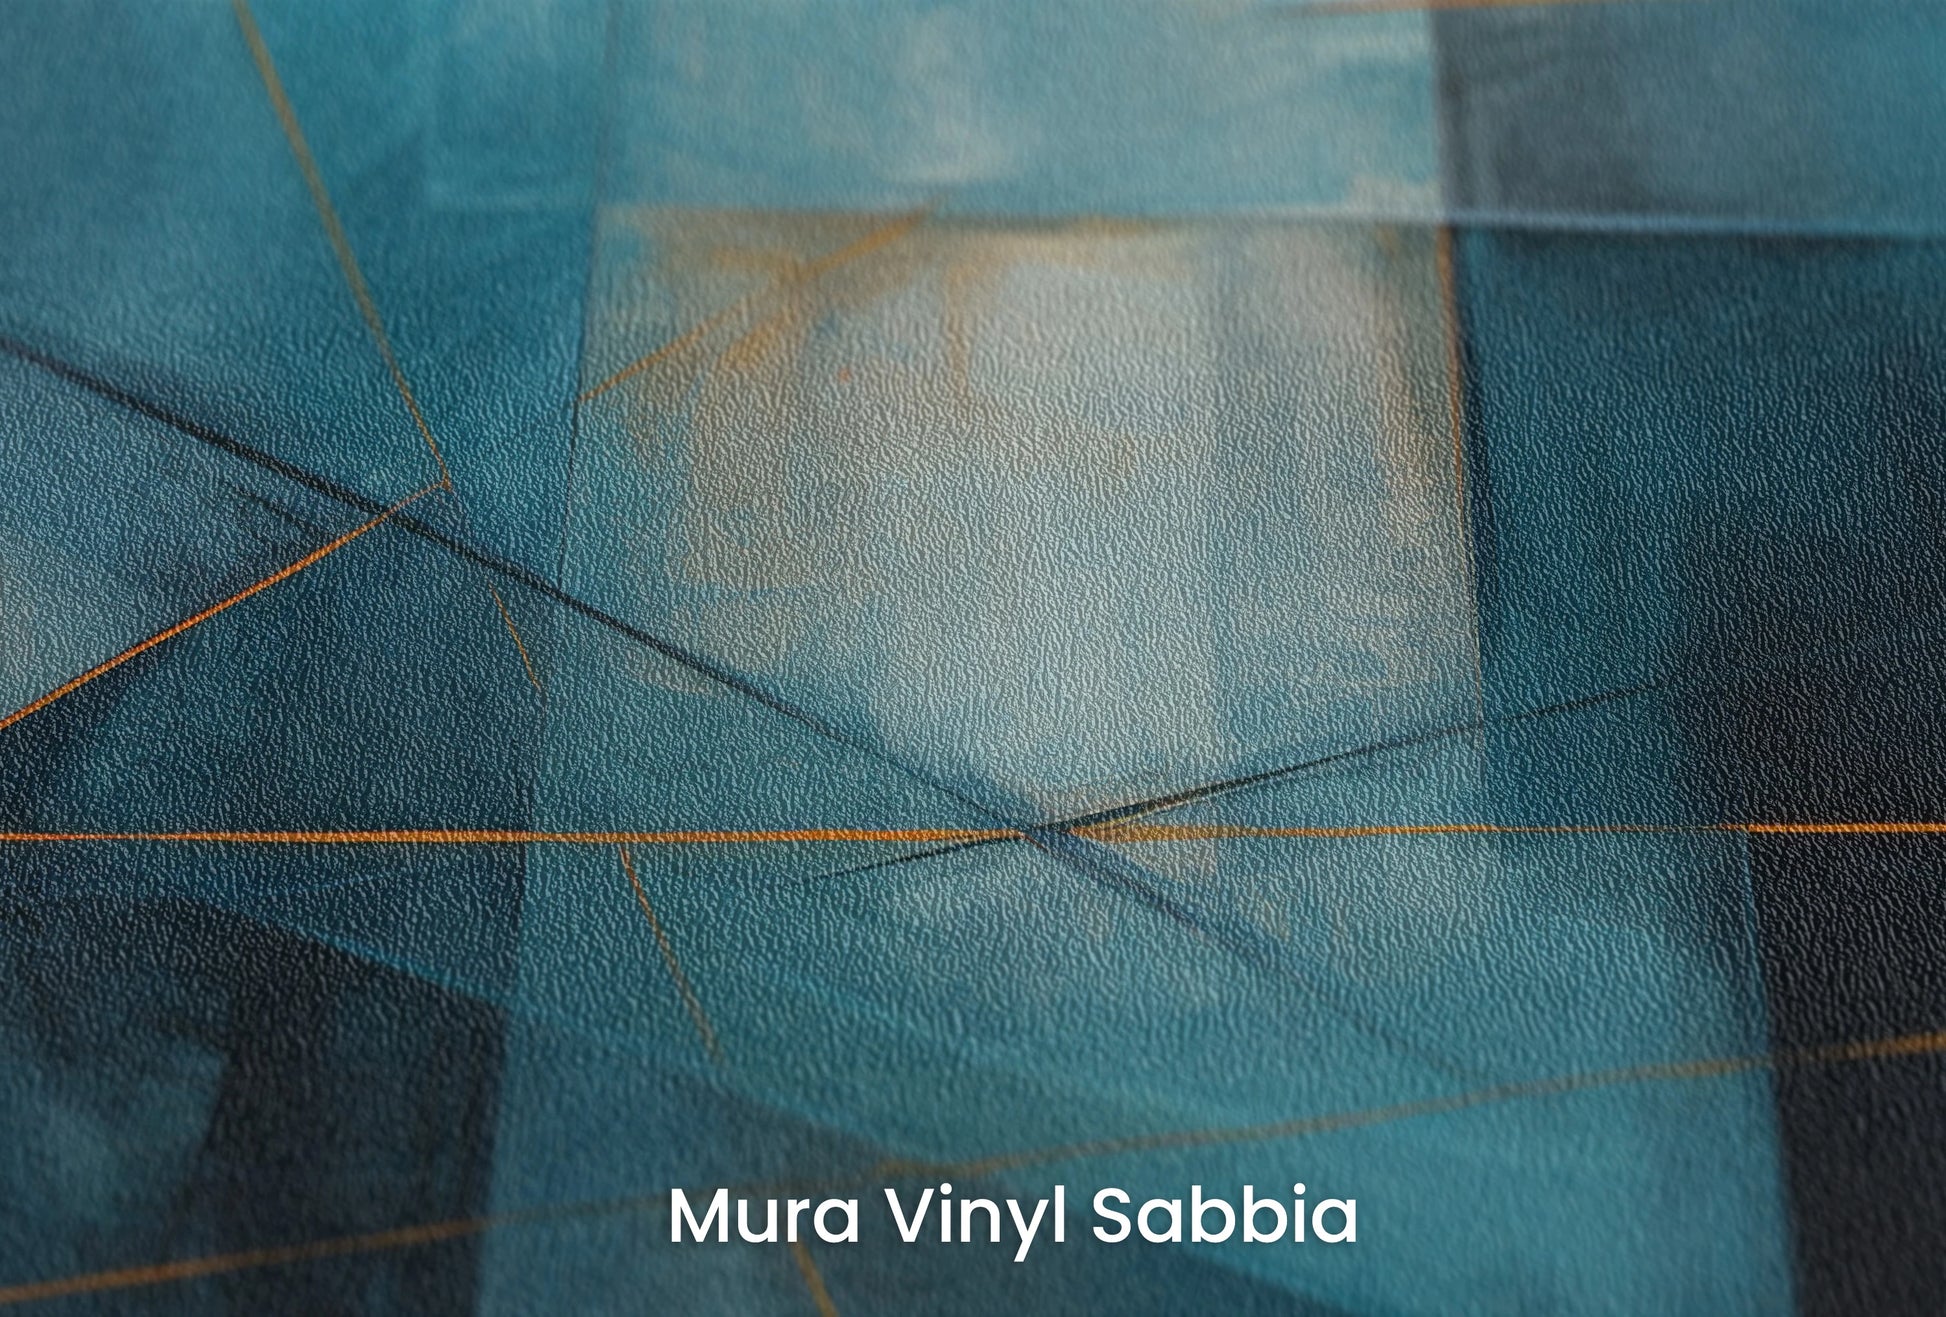 Zbliżenie na artystyczną fototapetę o nazwie Azure Intersection na podłożu Mura Vinyl Sabbia struktura grubego ziarna piasku.